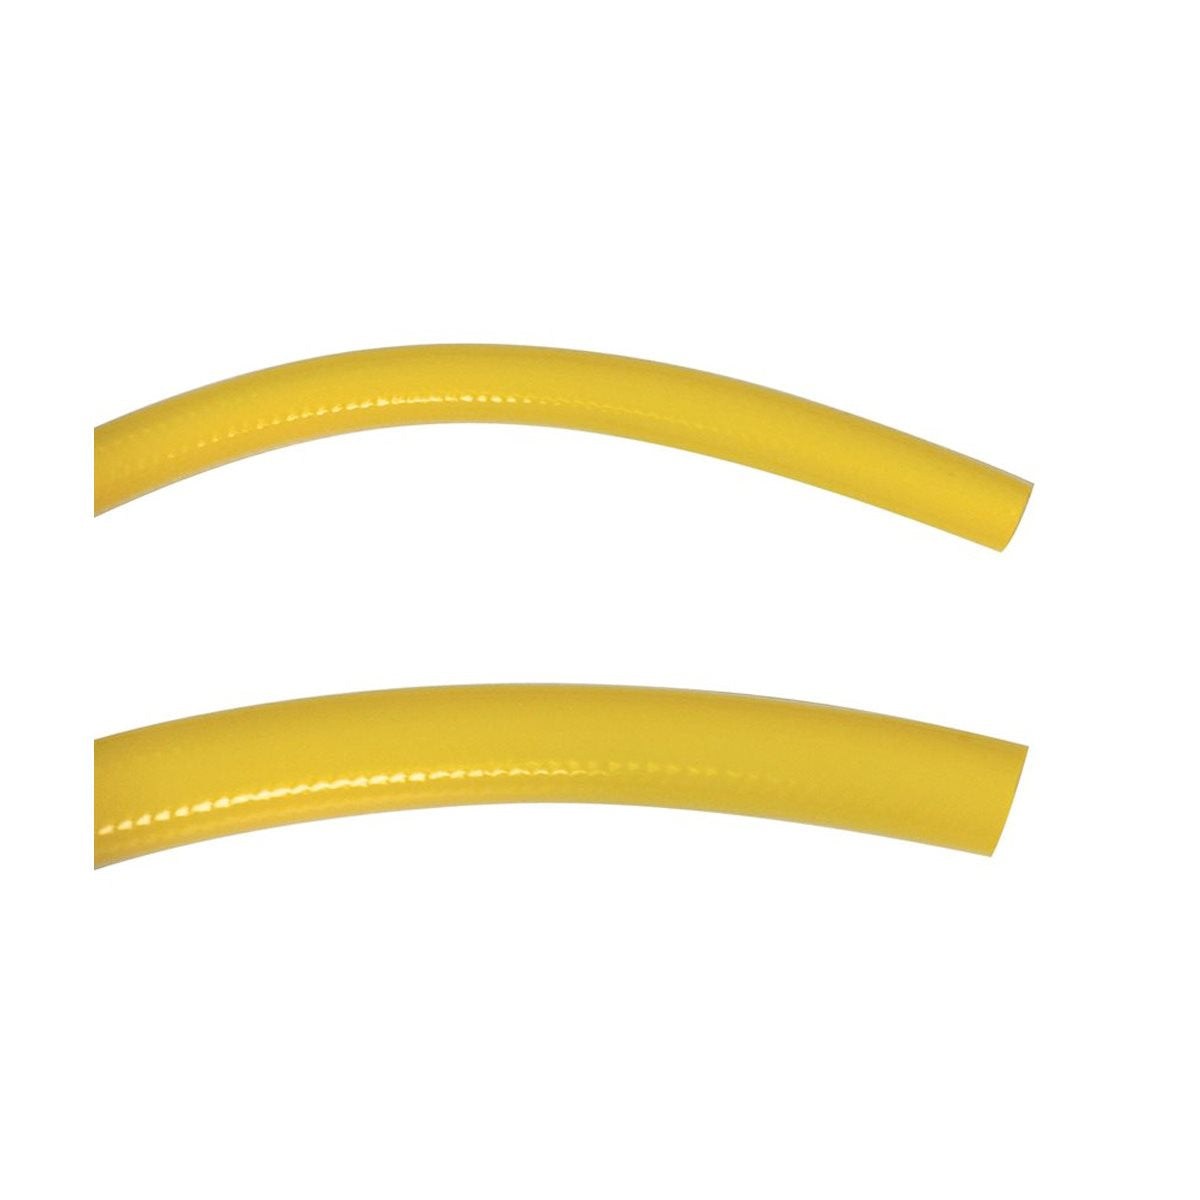 Product Image:Tuyau jaune 125 PSI Green Line 